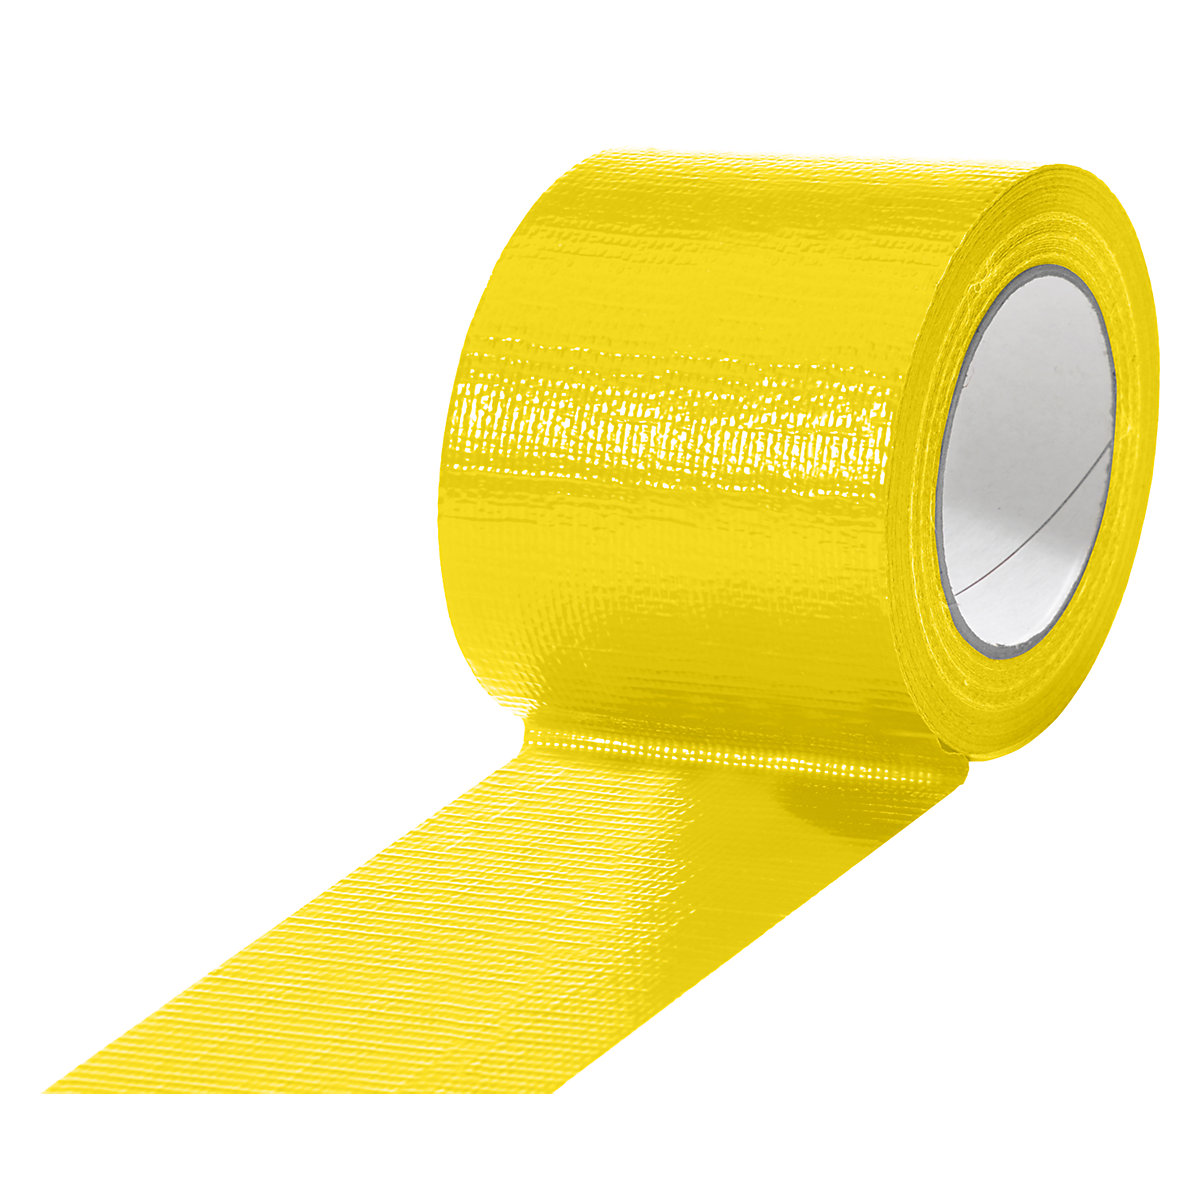 Traka od tkanine, u različitim bojama, pak. 12 rola, u žutoj boji, širina trake 75 mm-19